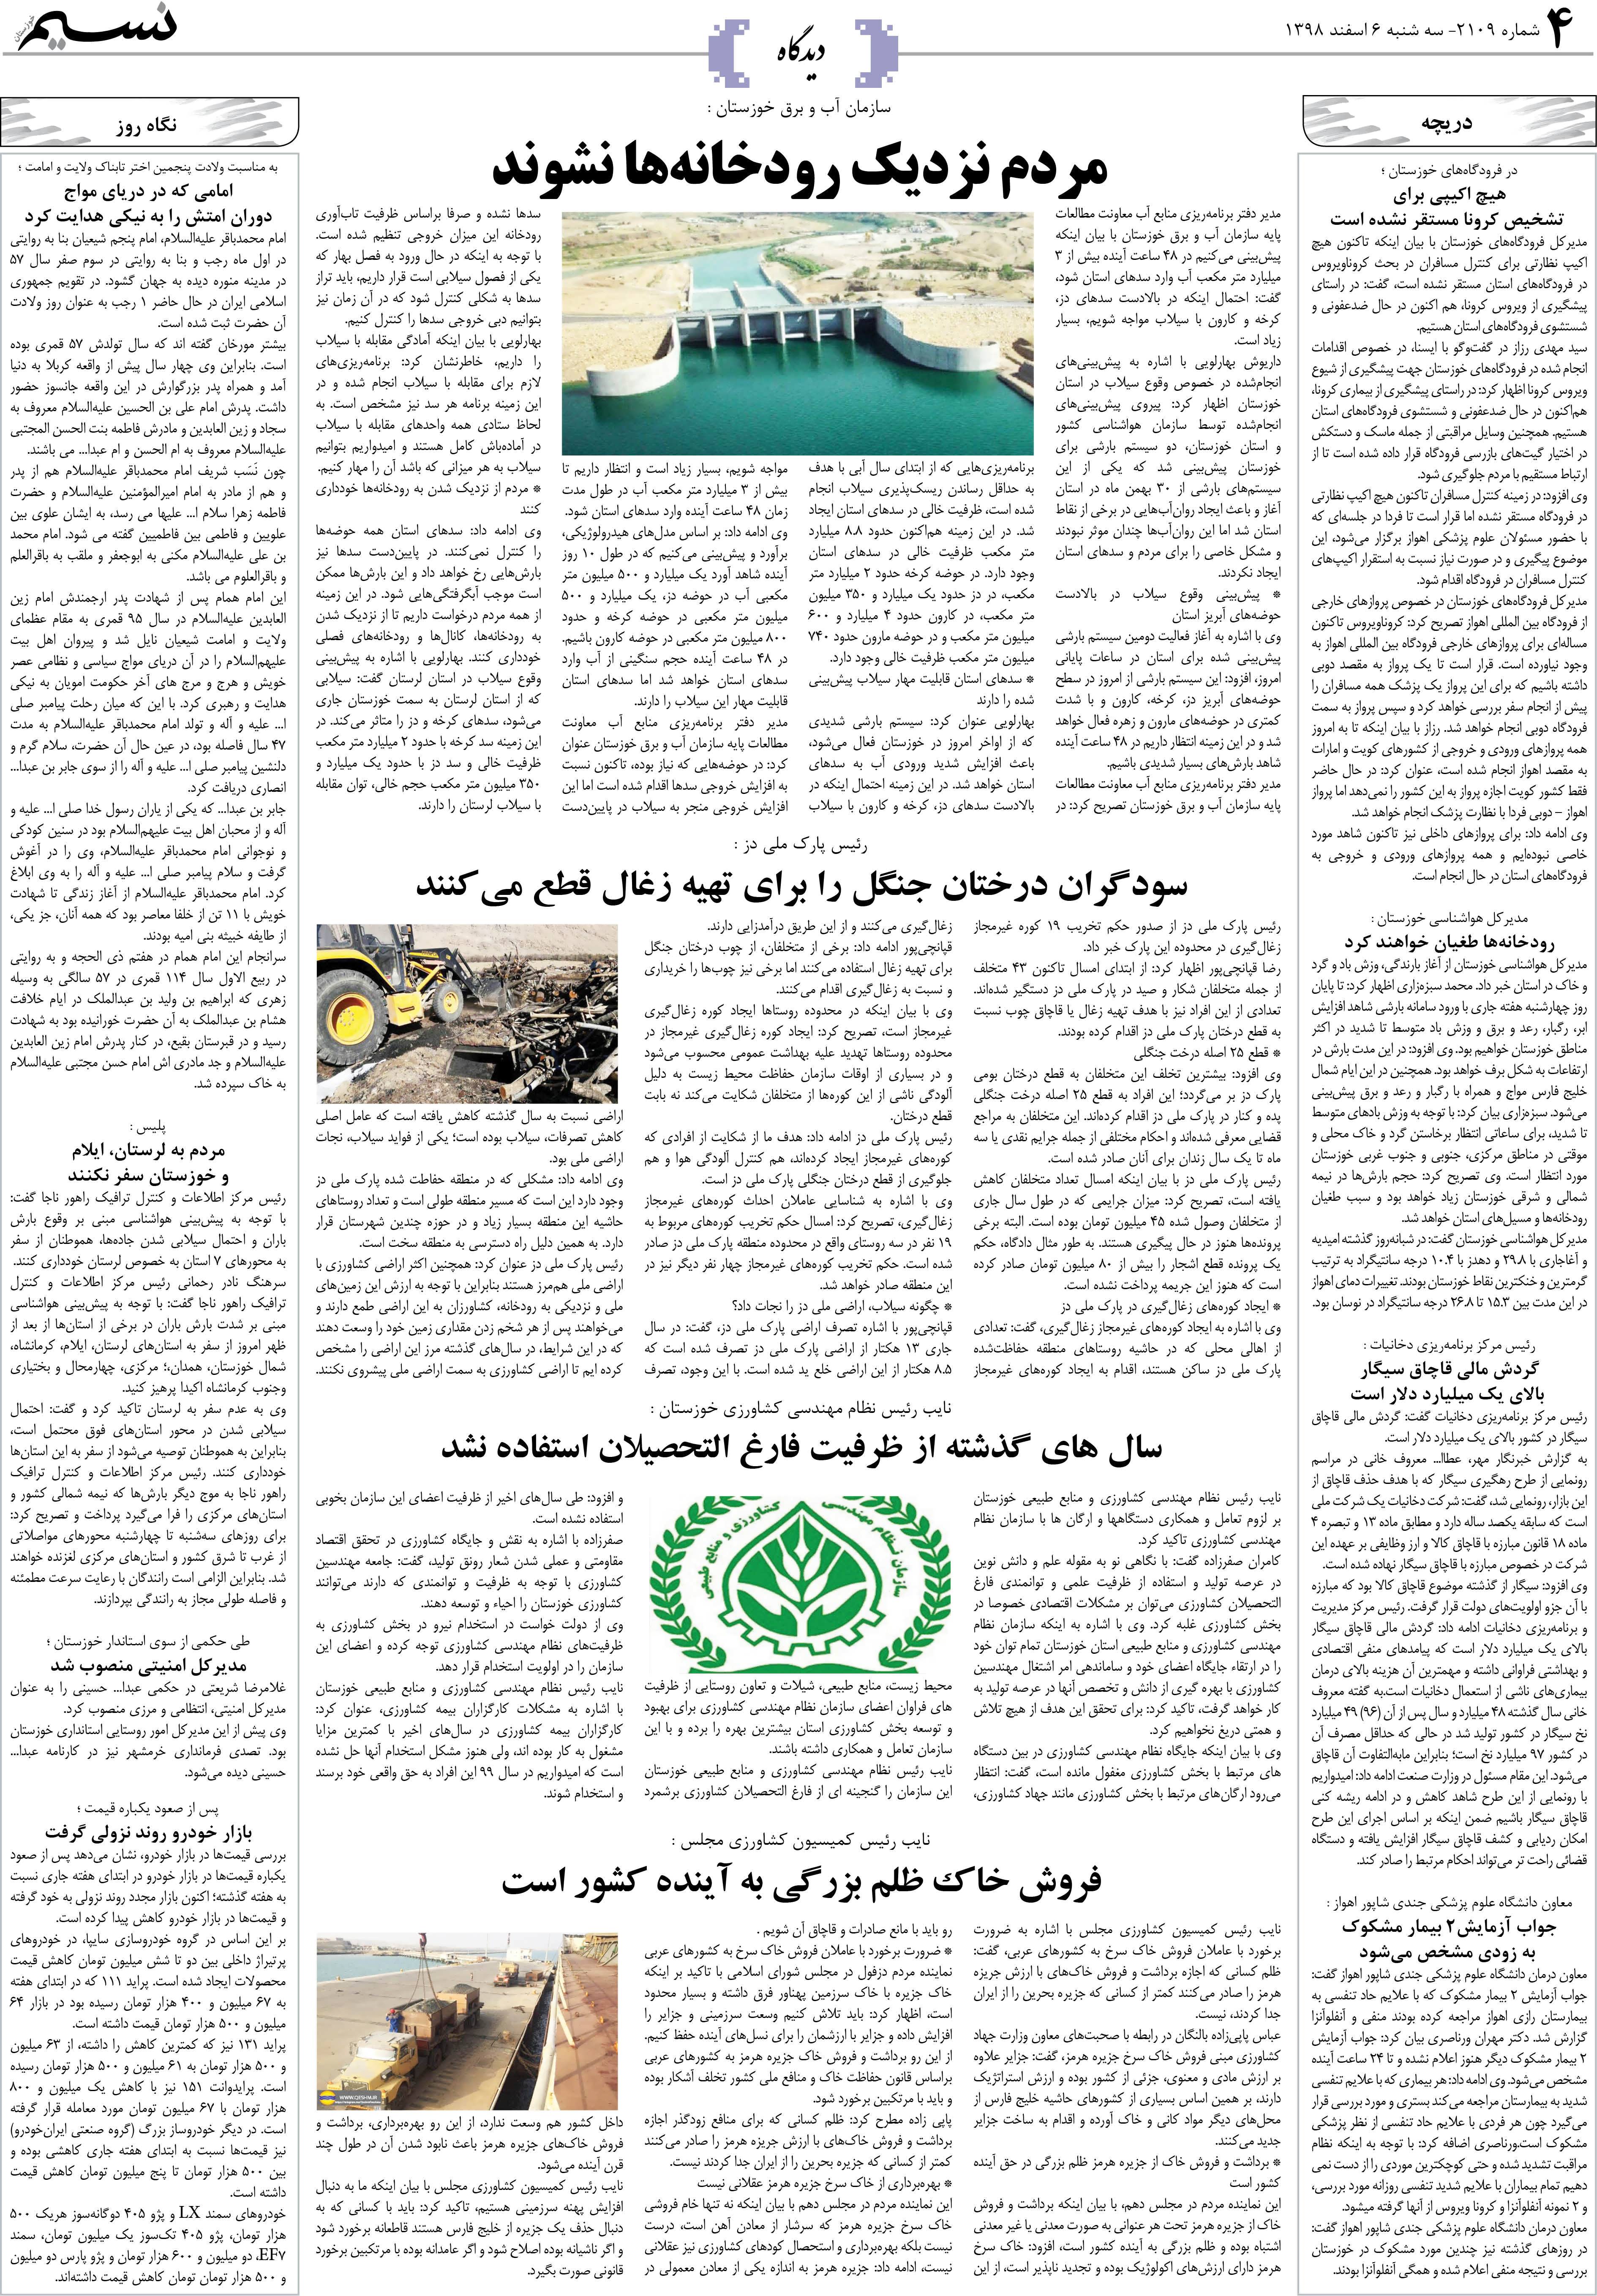 صفحه دیدگاه روزنامه نسیم شماره 2109